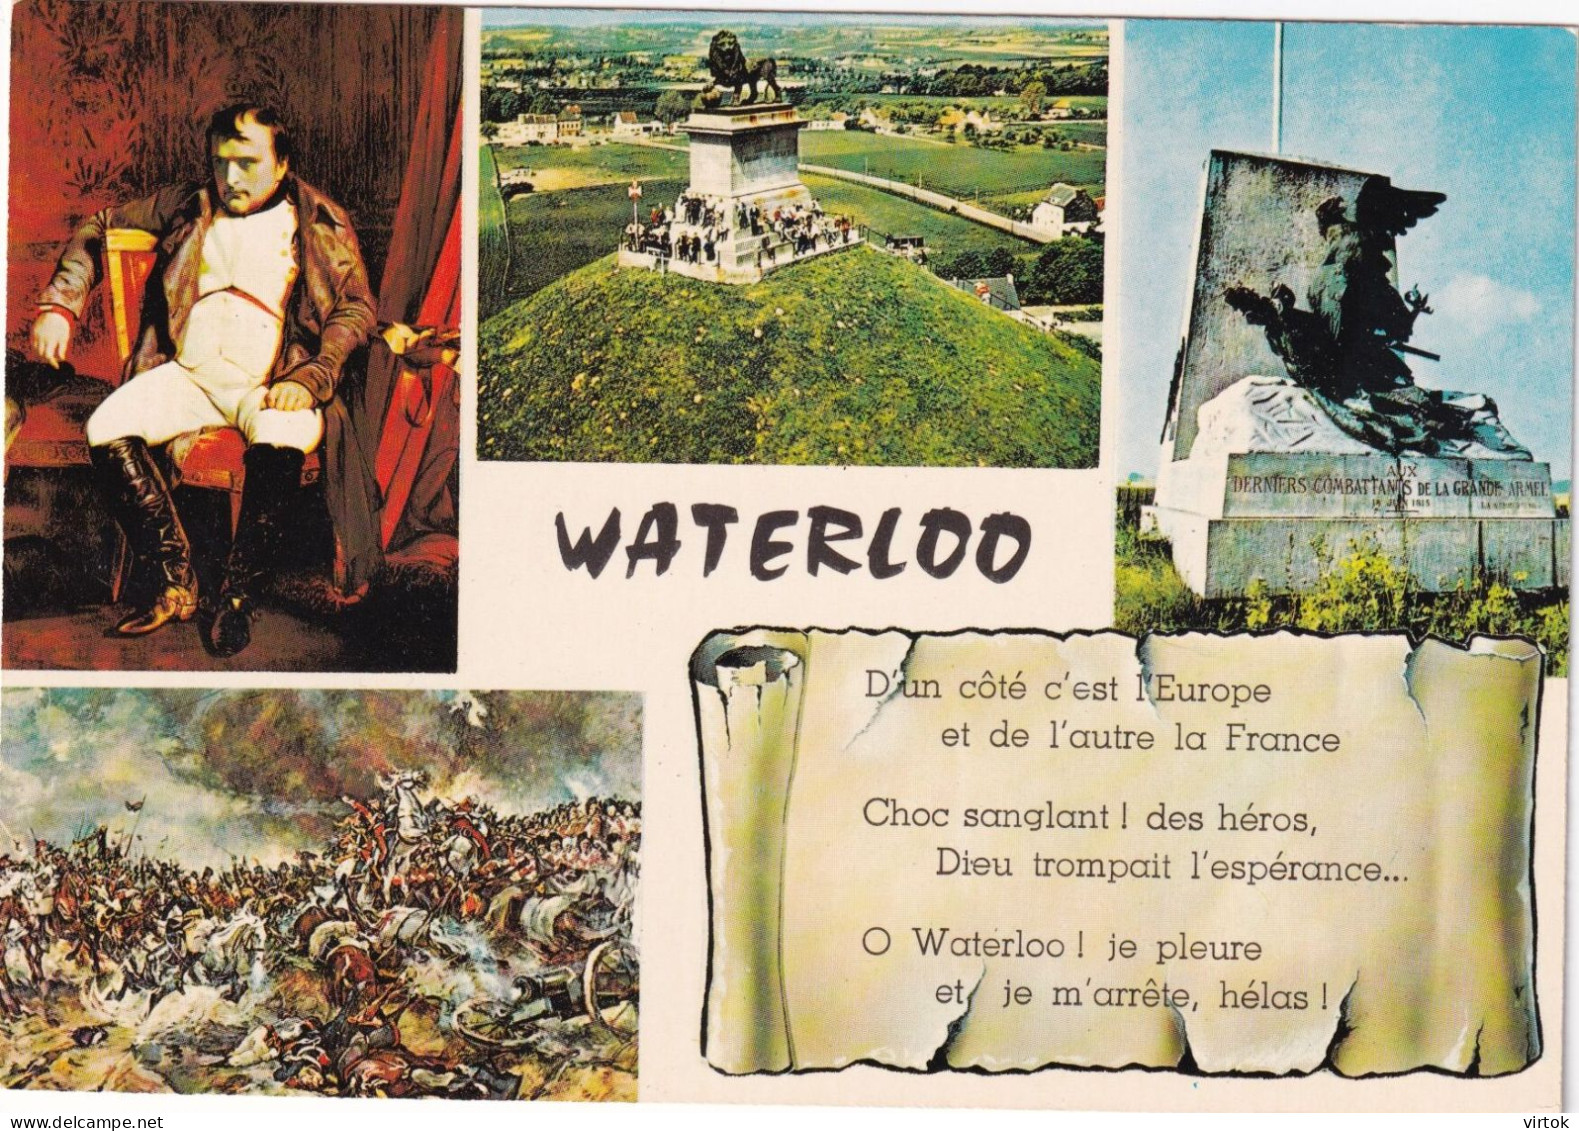 Waterloo - Waterloo